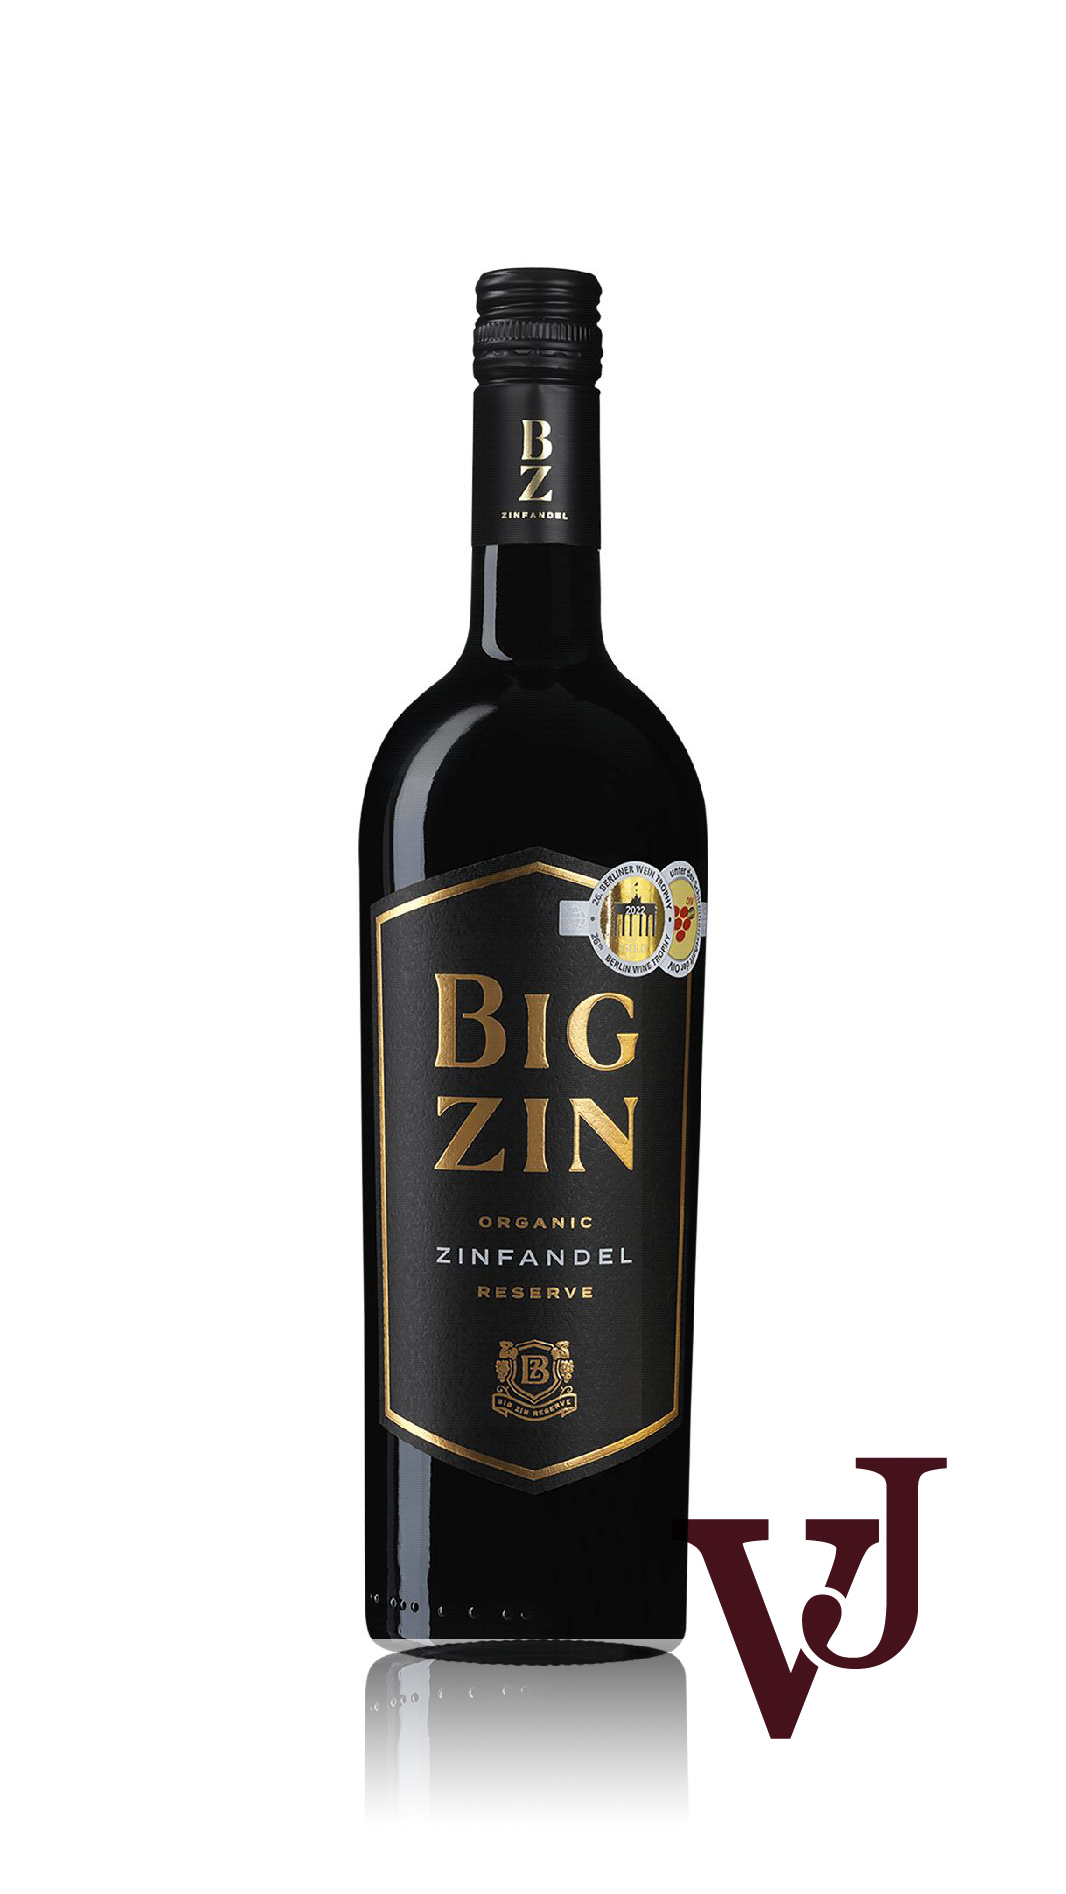 Rött Vin - The Big Zin Zinfandel Old Vines artikel nummer 242801 från producenten Vinimundi från området Italien